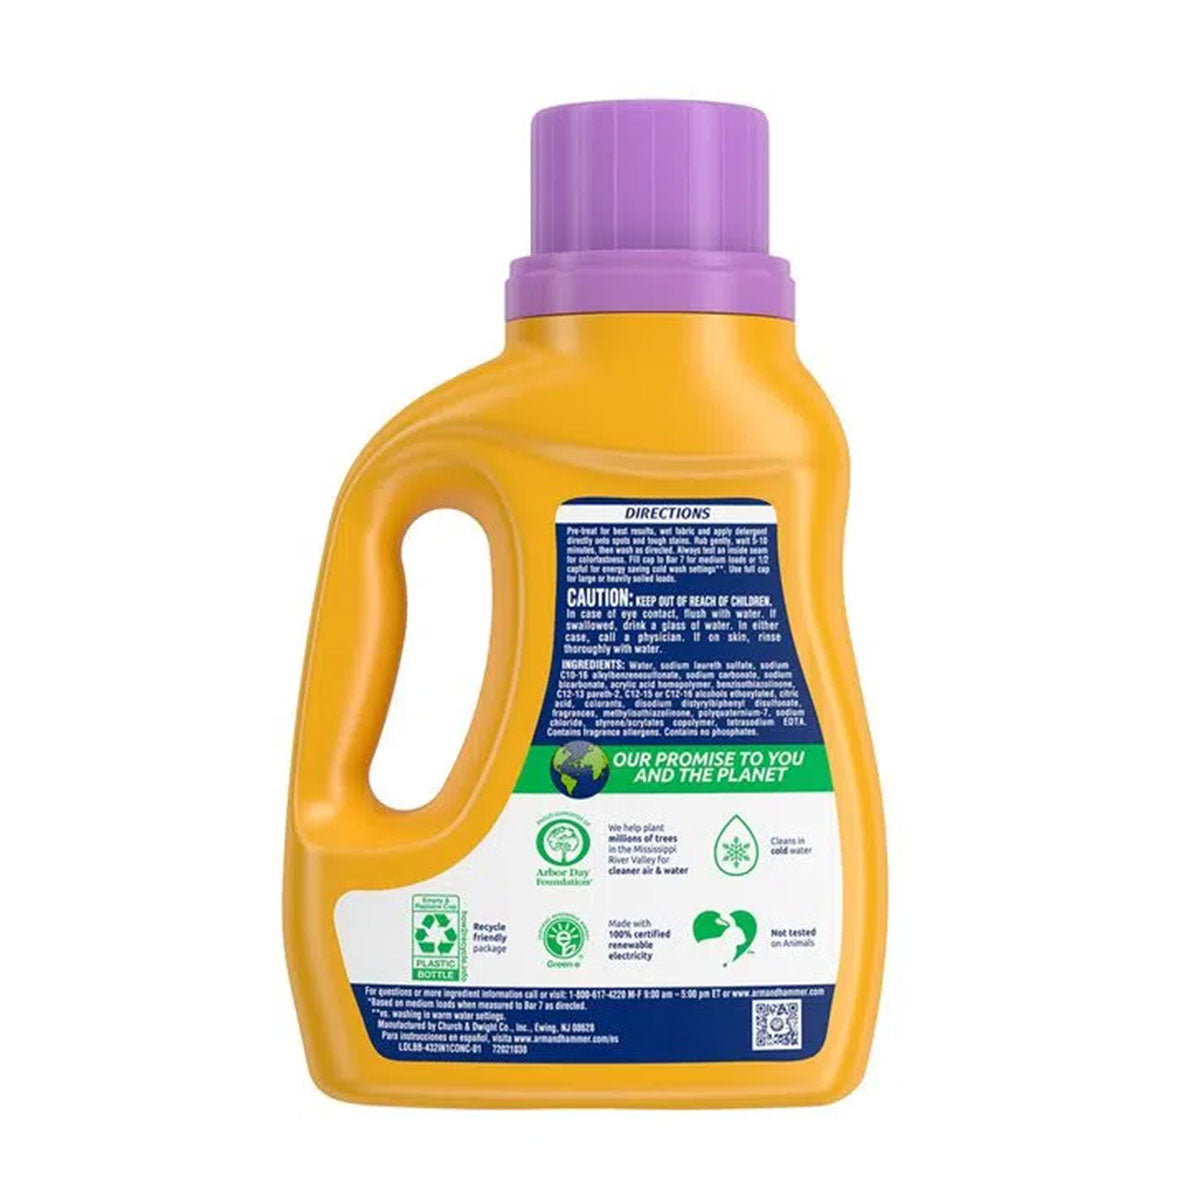 Detergente líquido con un toque de Suavizante para ropa 3 en 1 Arm & Hammer, Alta Eficiencia 3 litros (77 cargas)